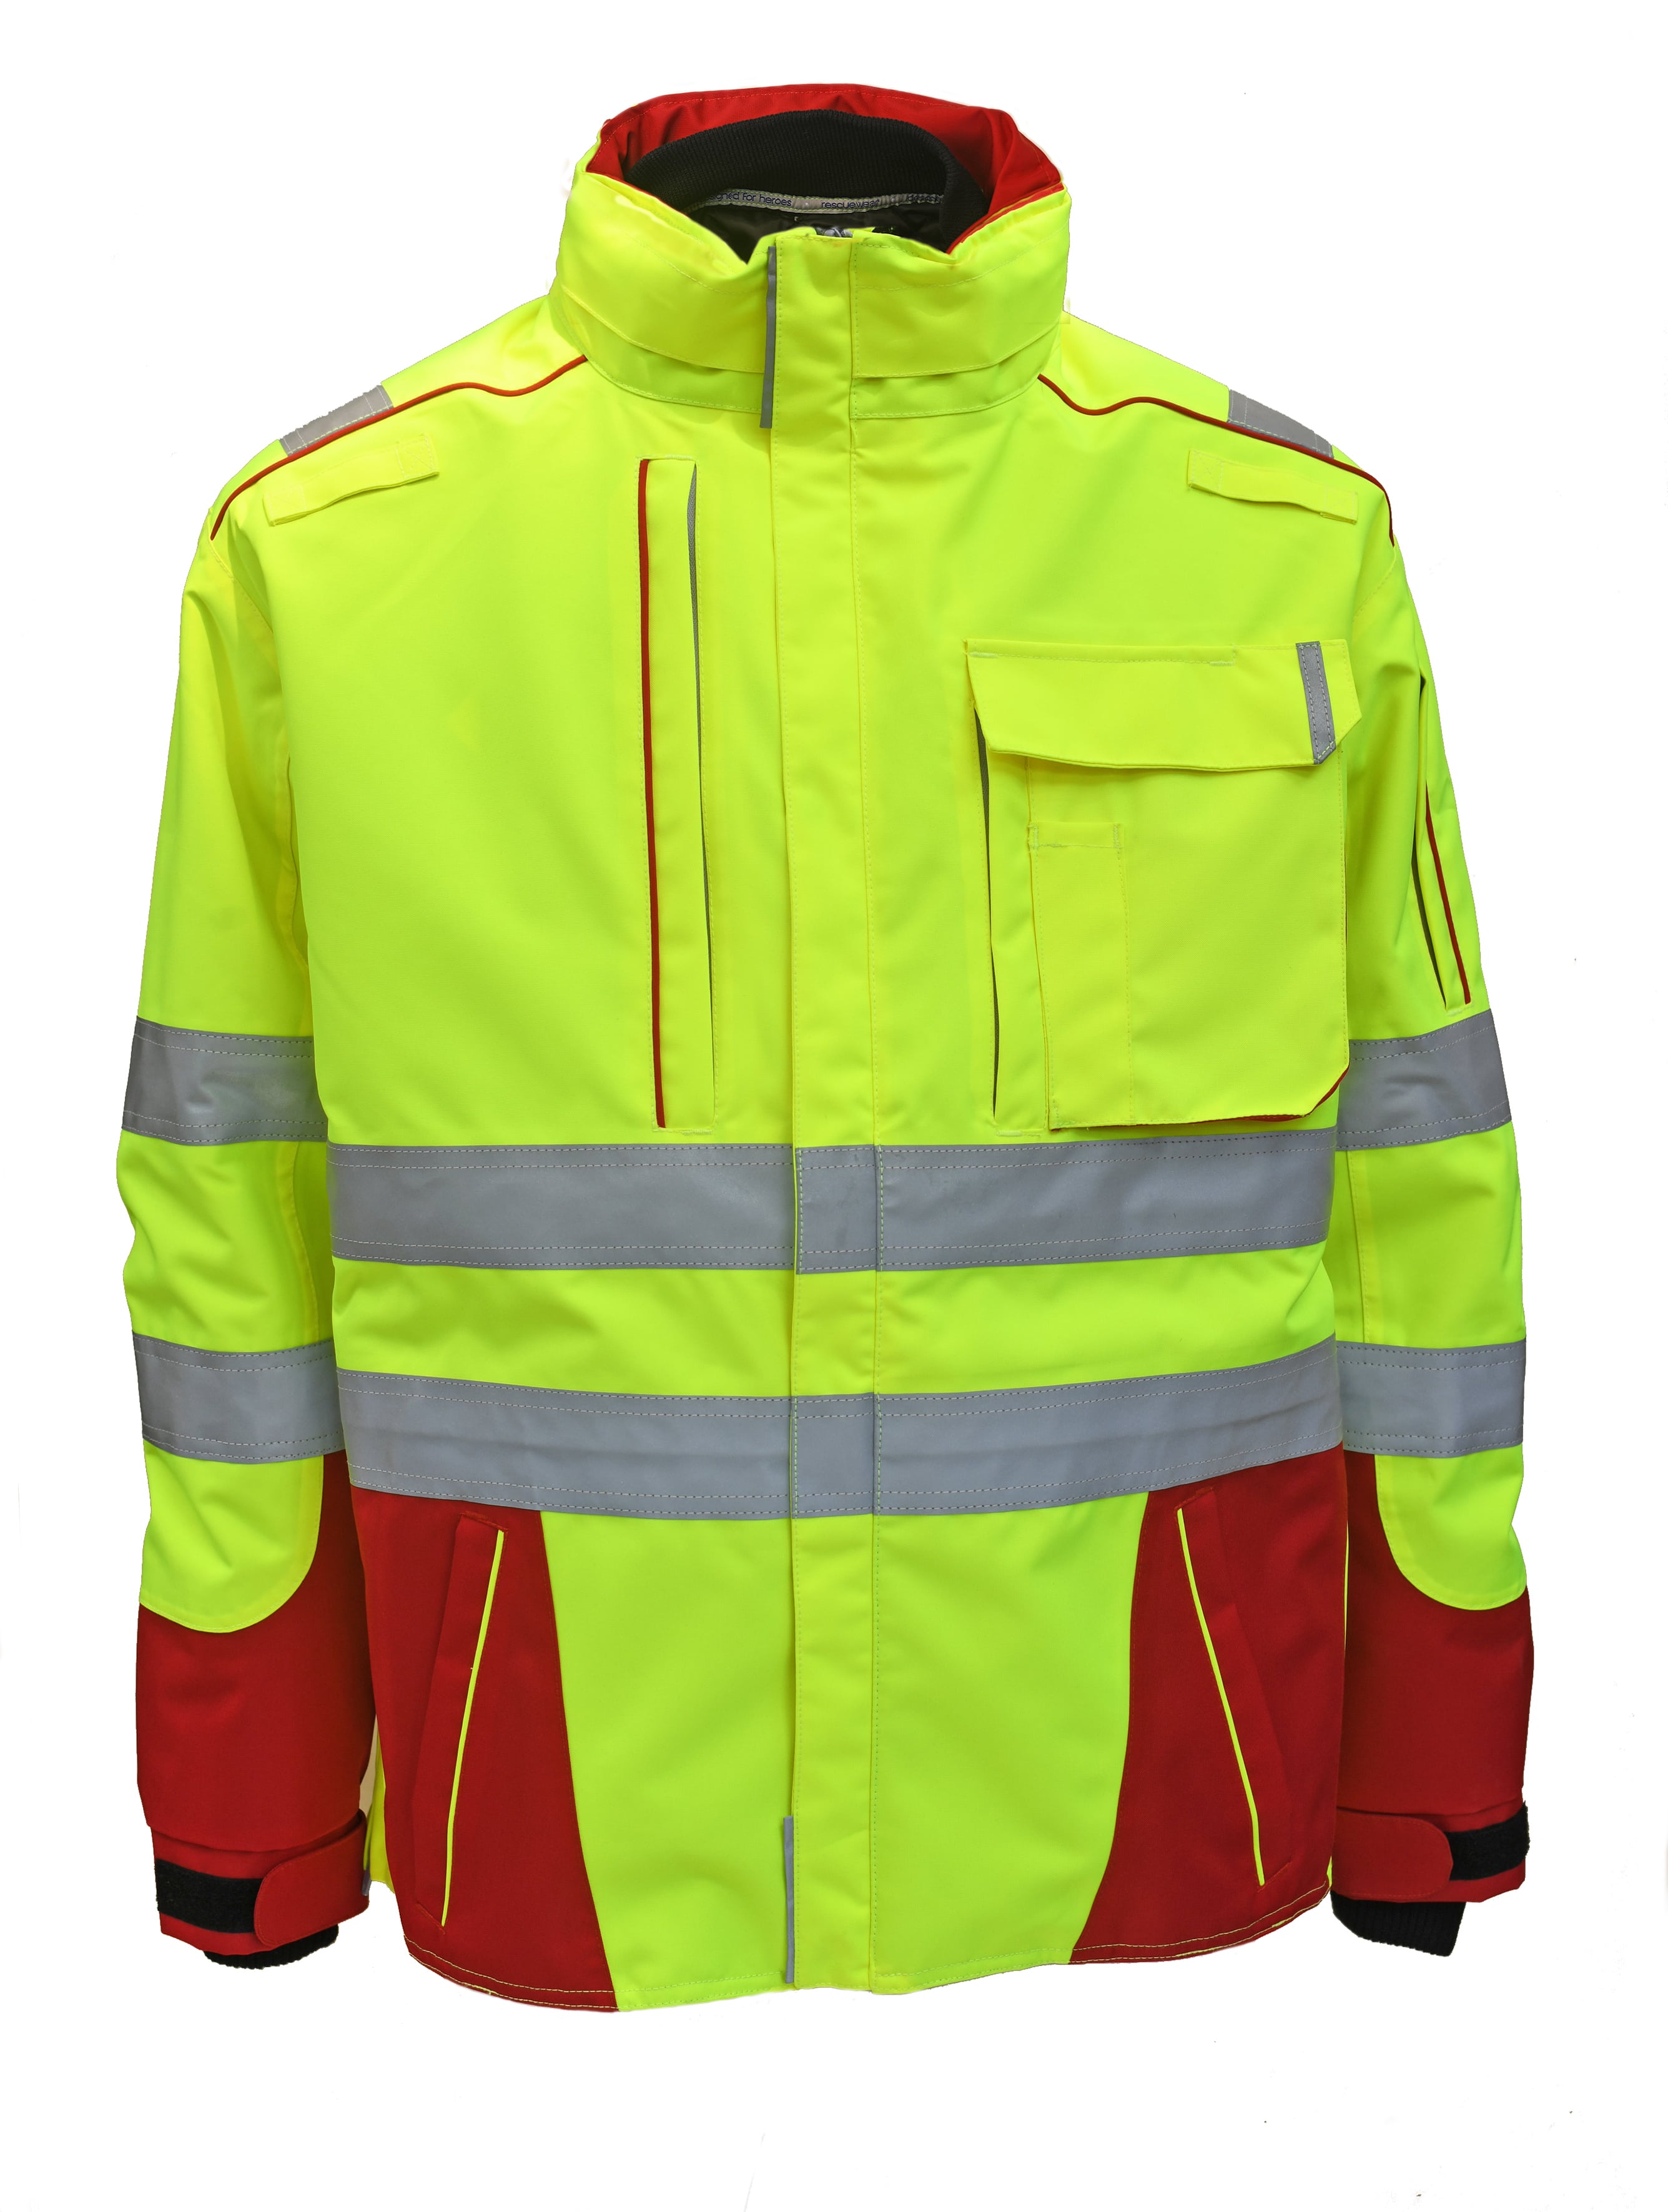 Rescuewear Midi-Parker Dynamic HiVis Klasse 3 Rot / Neon Gelb - M